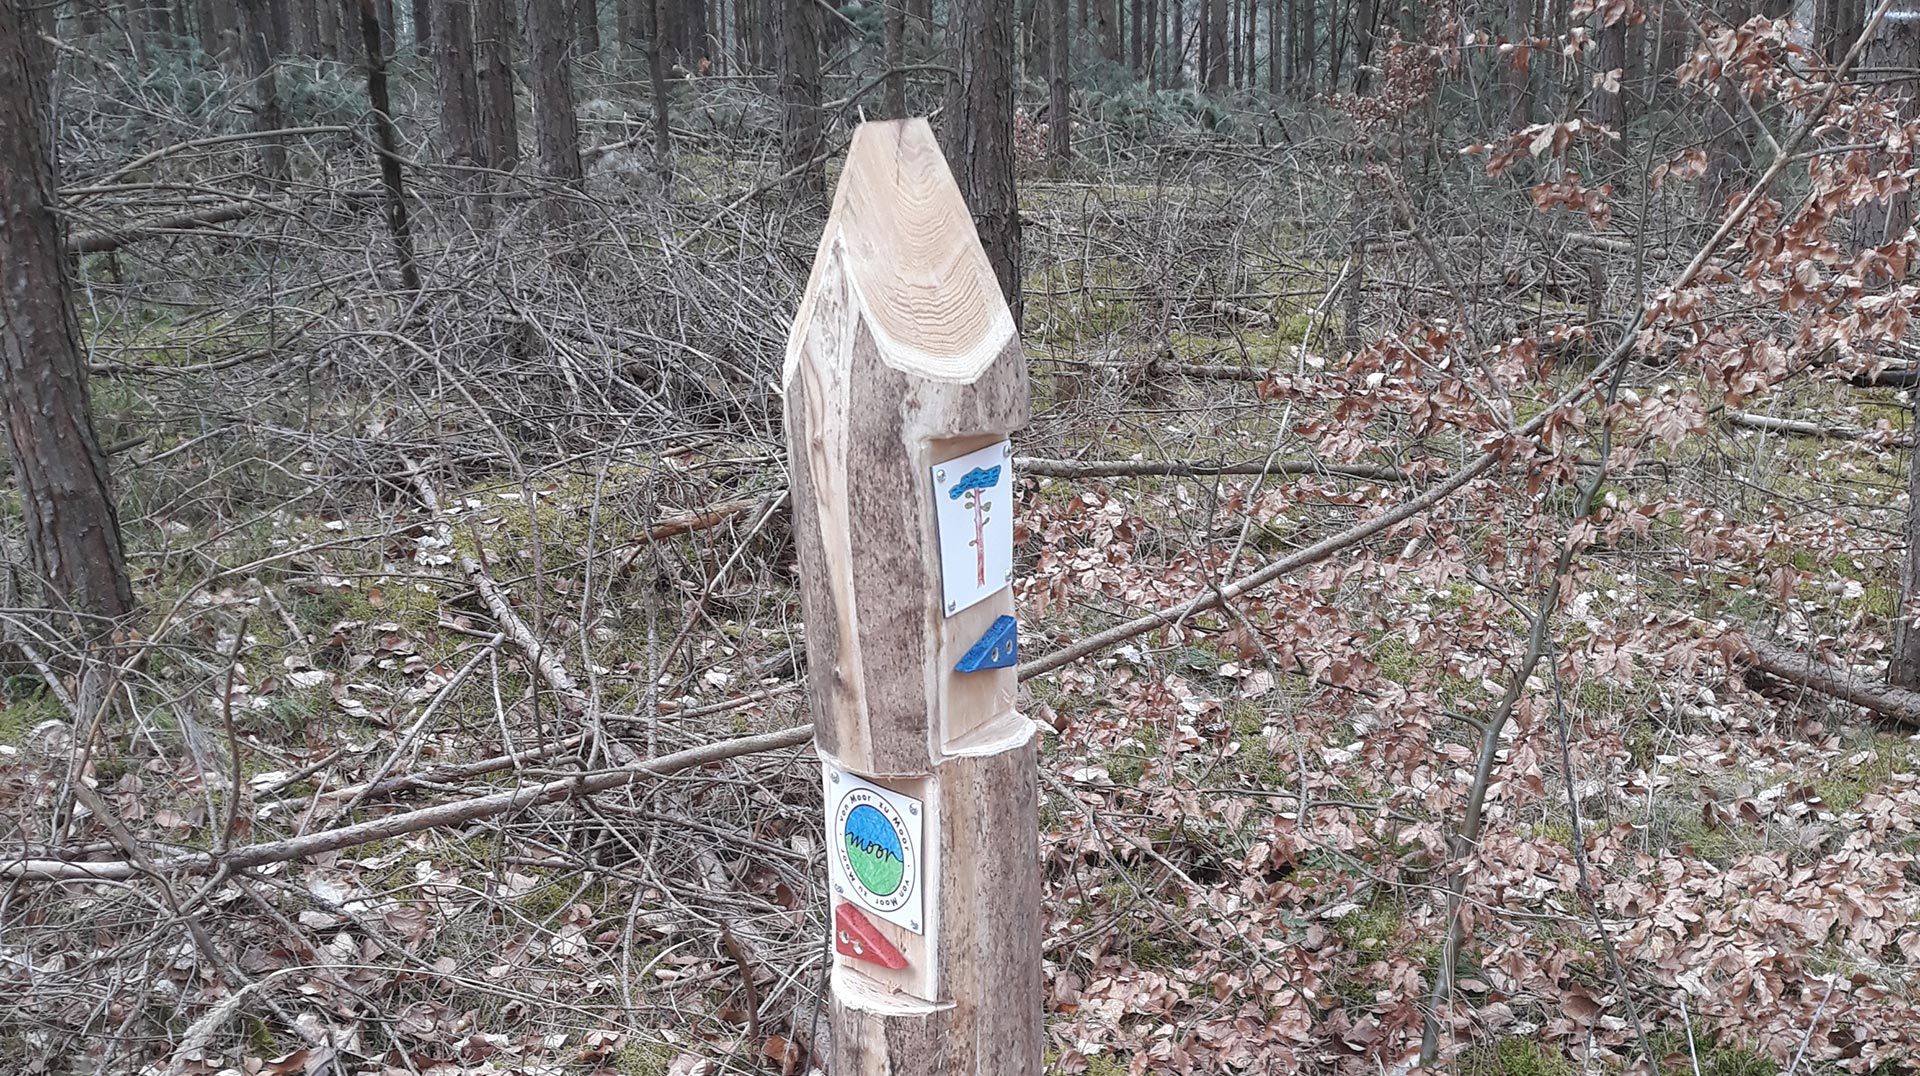 NatueParkHaus - Pfahl mit Beschriftung im Wald